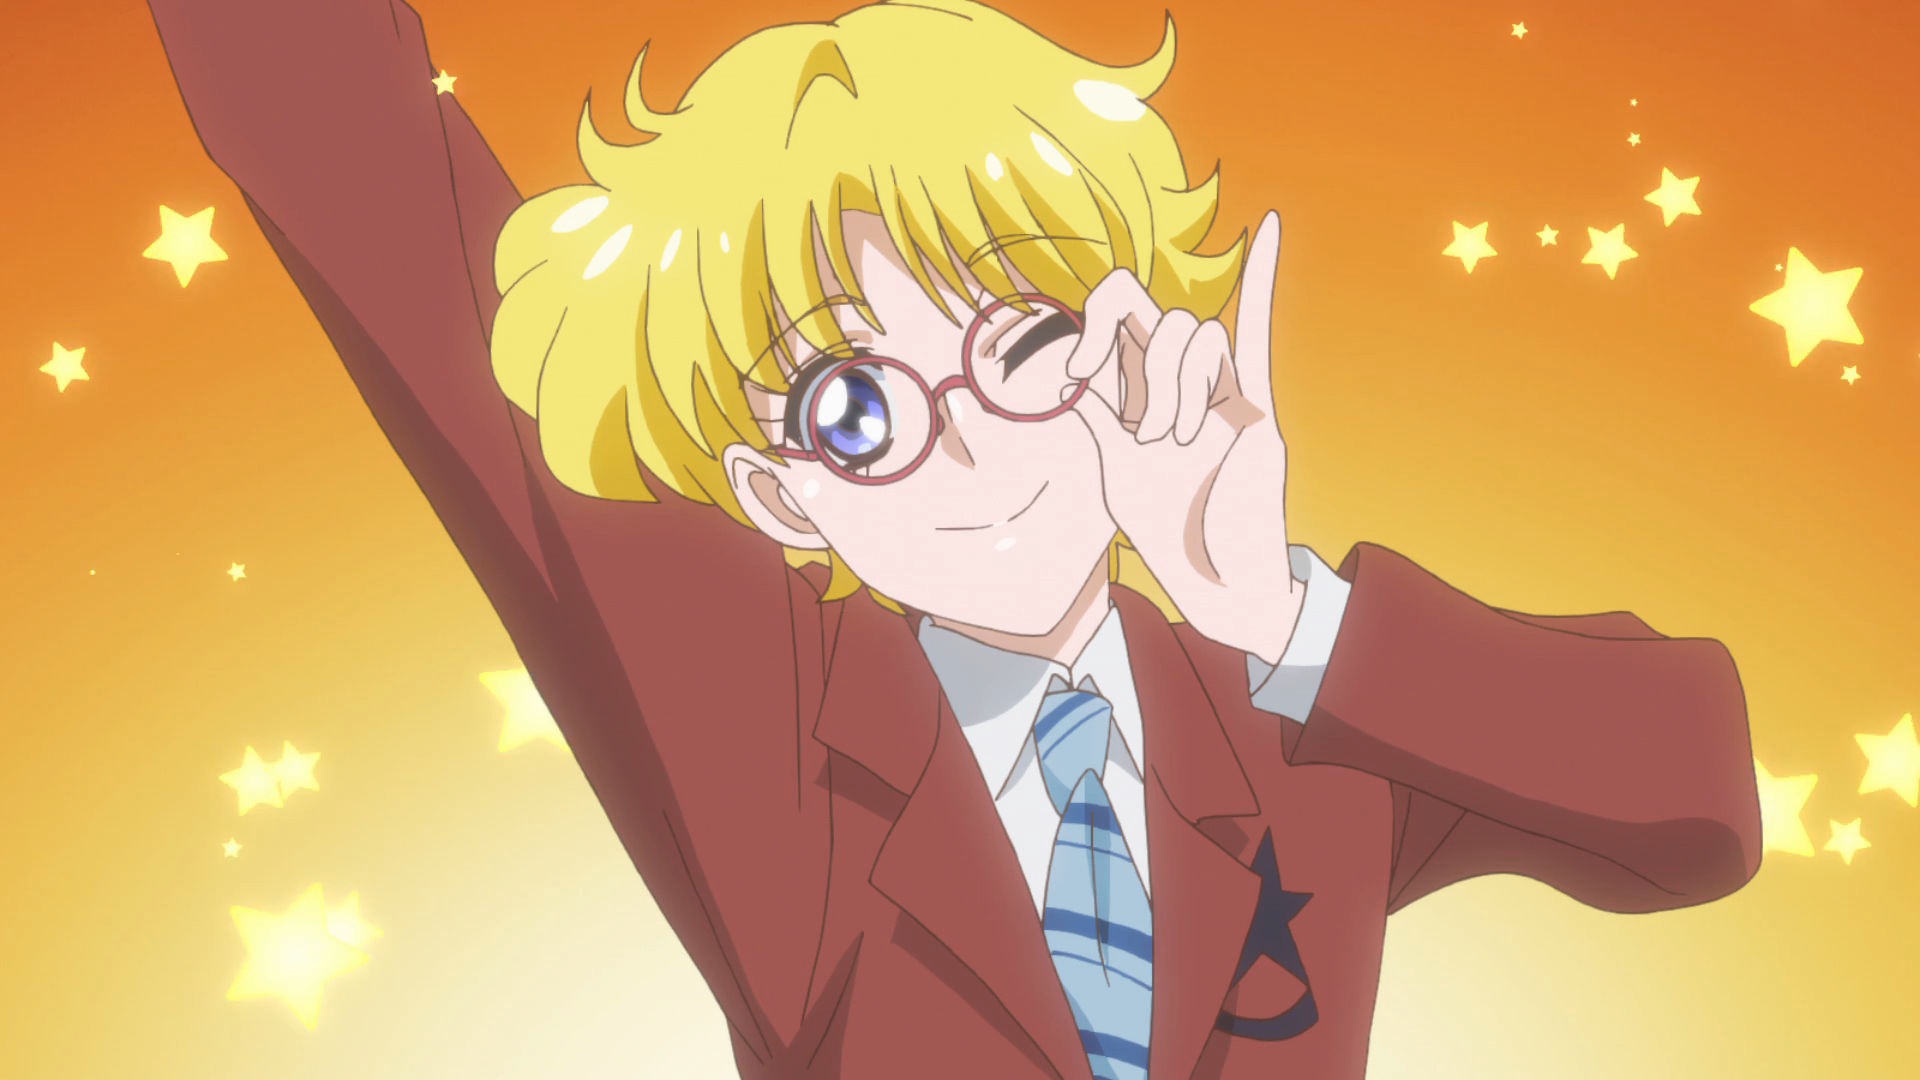 Genderbent Sailor Sailor Moon Character Sailor Moon S Vrogue Co